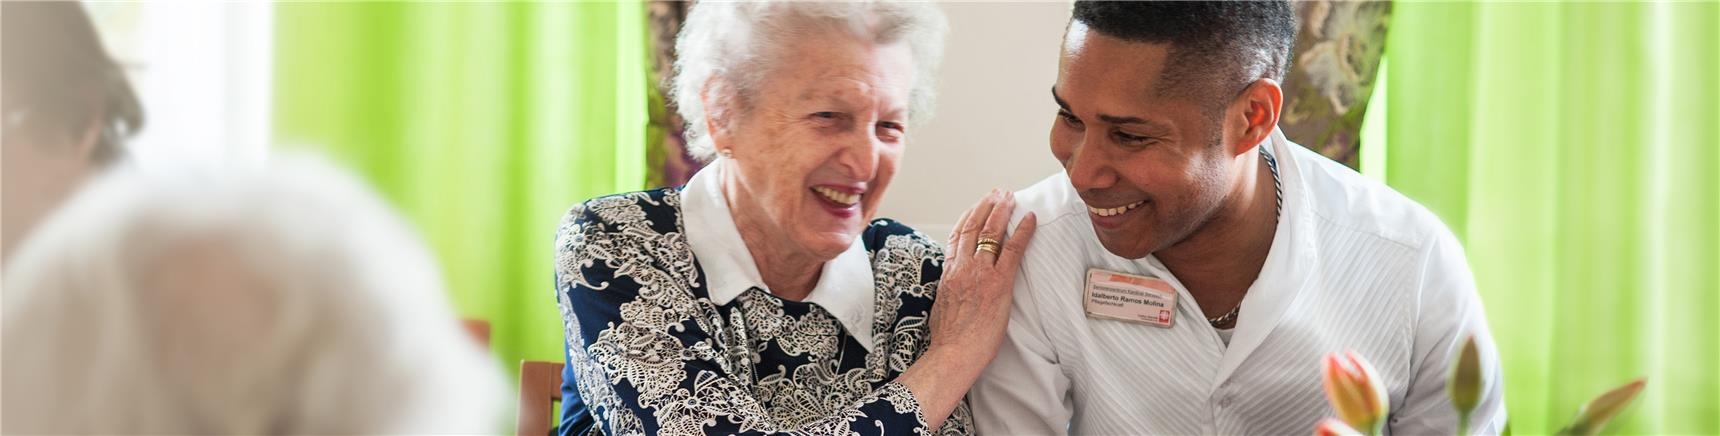 Seniorin und Altenpfleger sitzen nebeneinander am Kaffeetisch und lachen herzlich